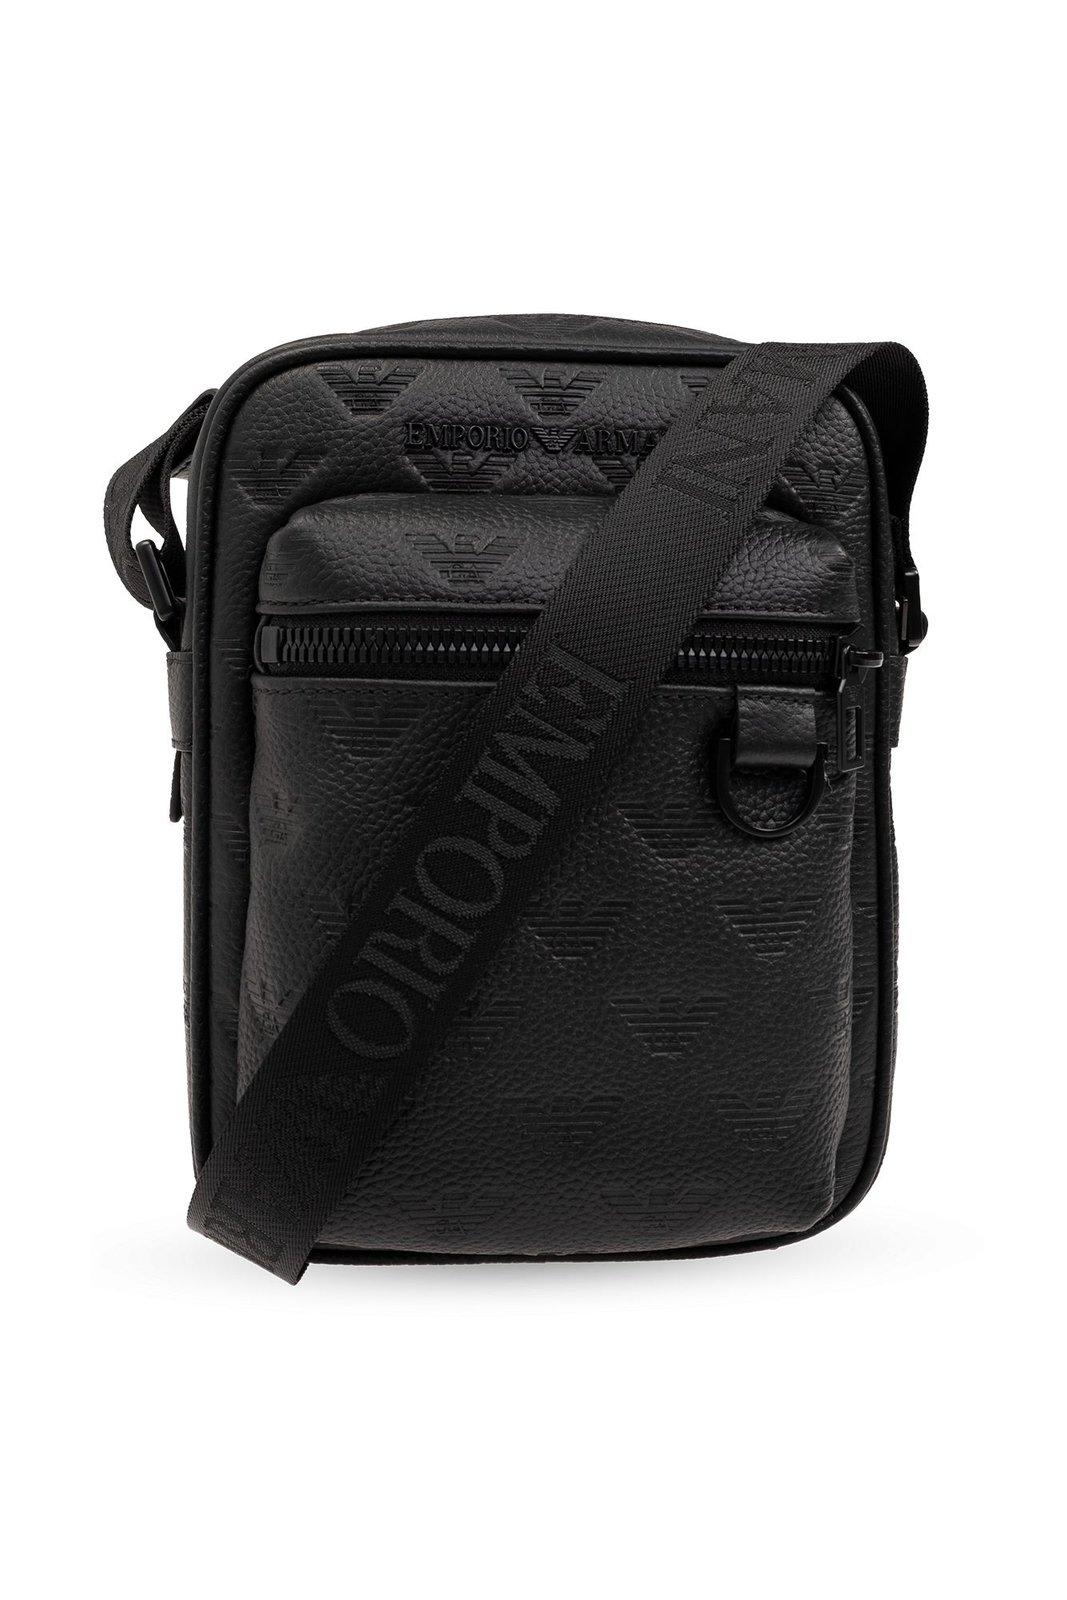 Emporio Armani Monogrammed Shoulder Bag In Black